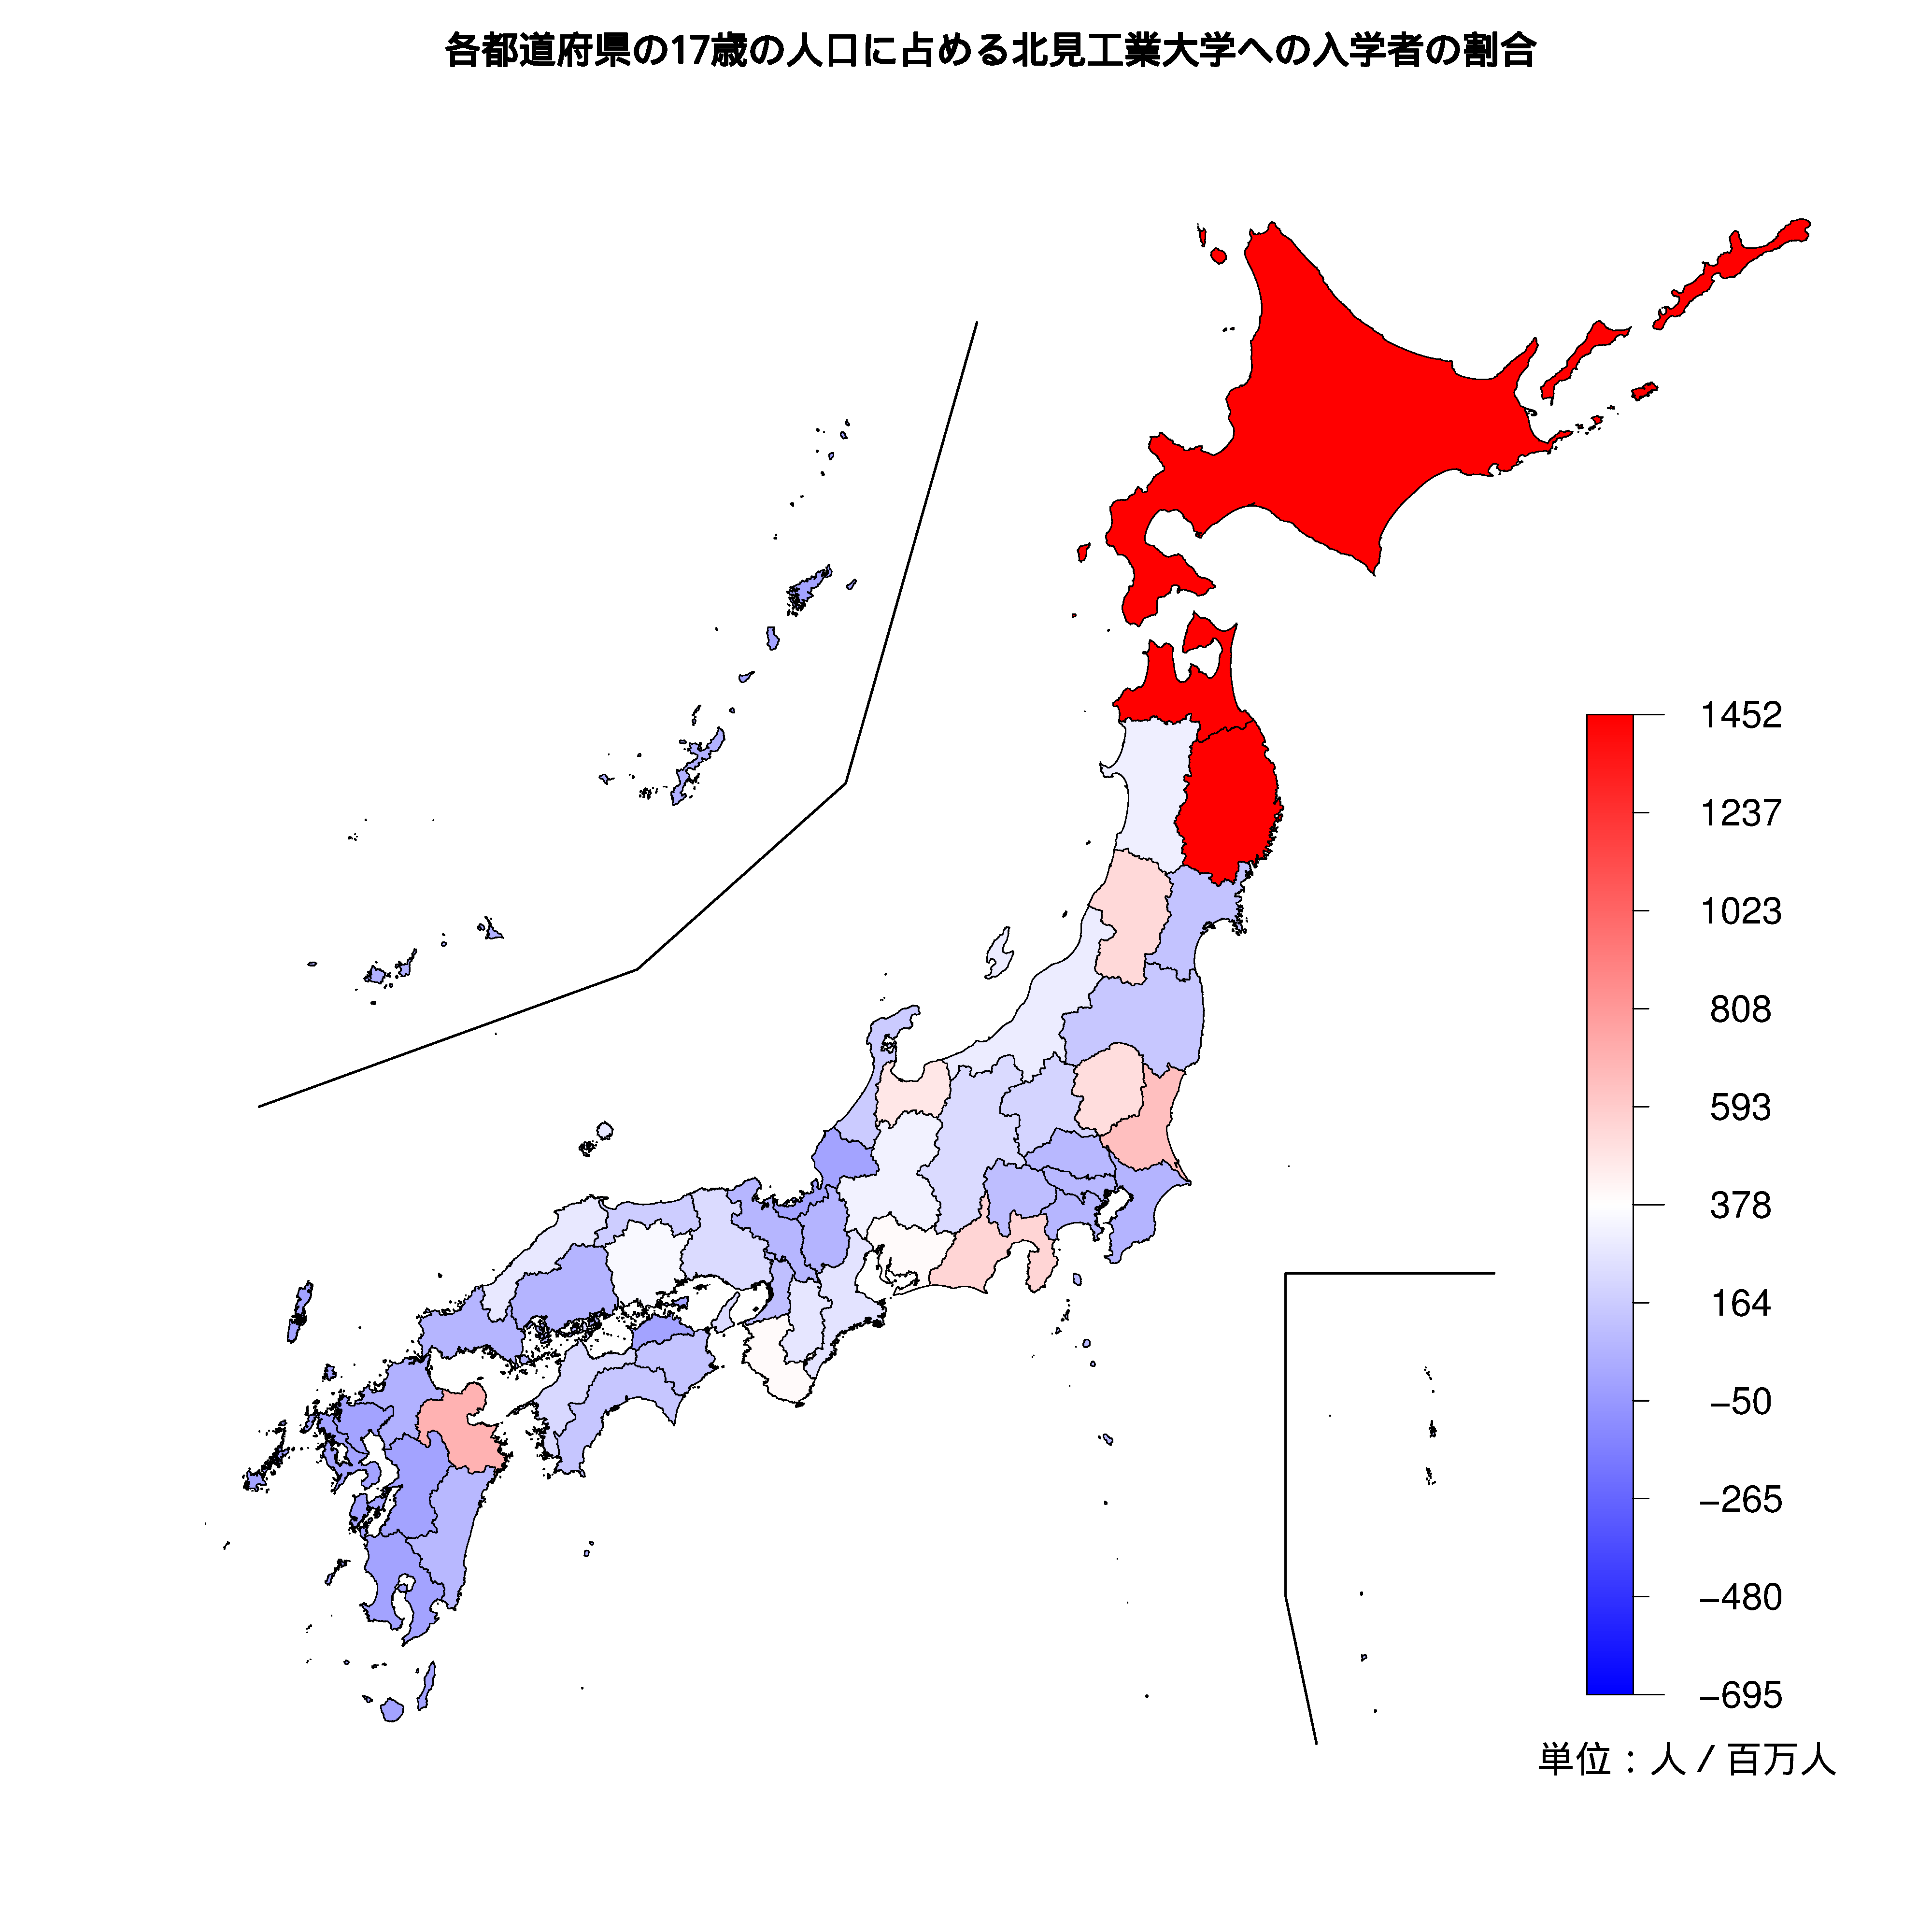 北見工業大学への入学者が多い都道府県の色分け地図